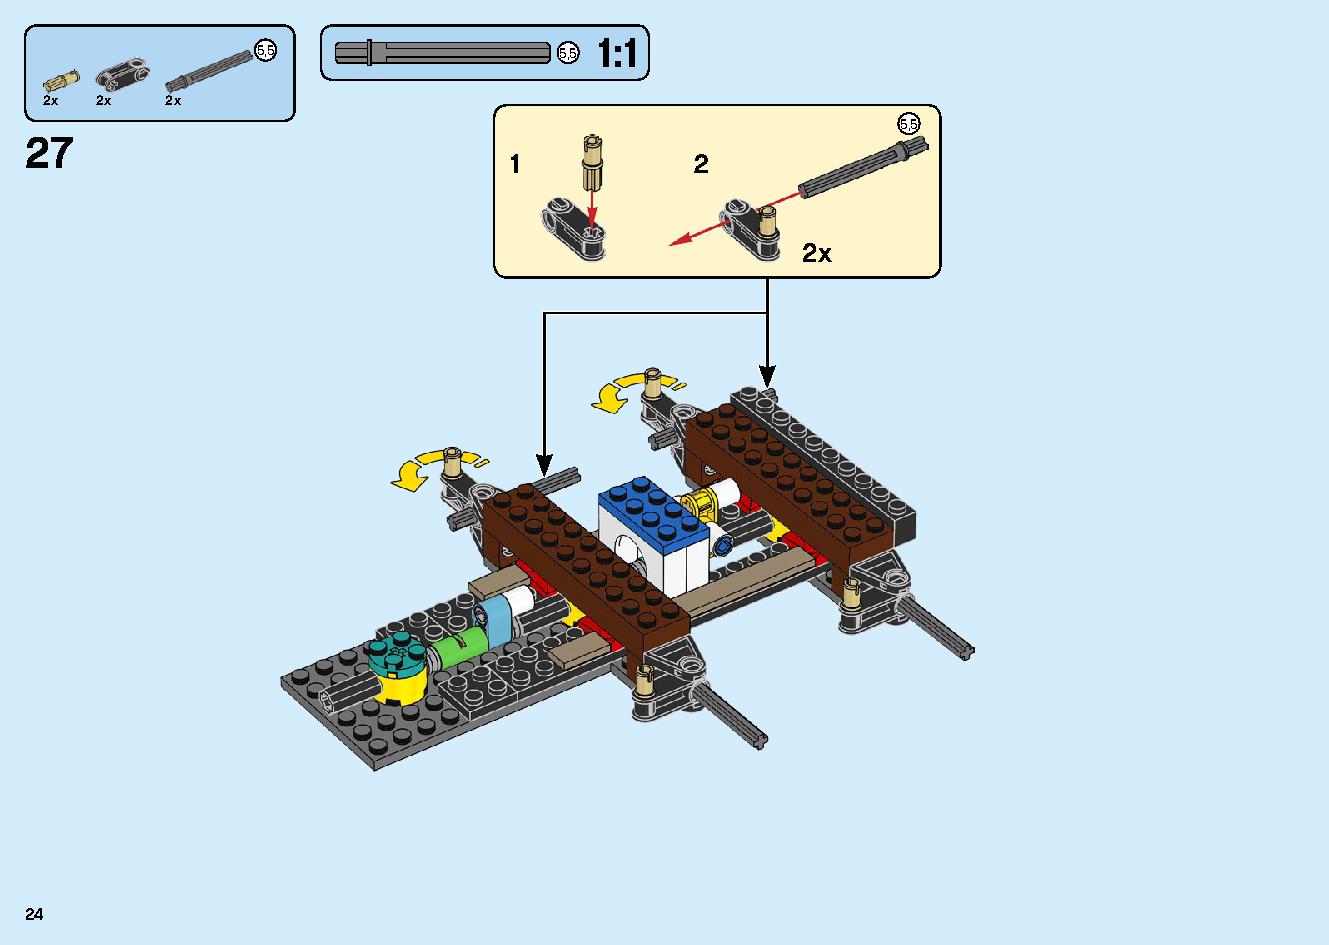 陸上戦艦バウンティ号 70677 レゴの商品情報 レゴの説明書・組立方法 24 page